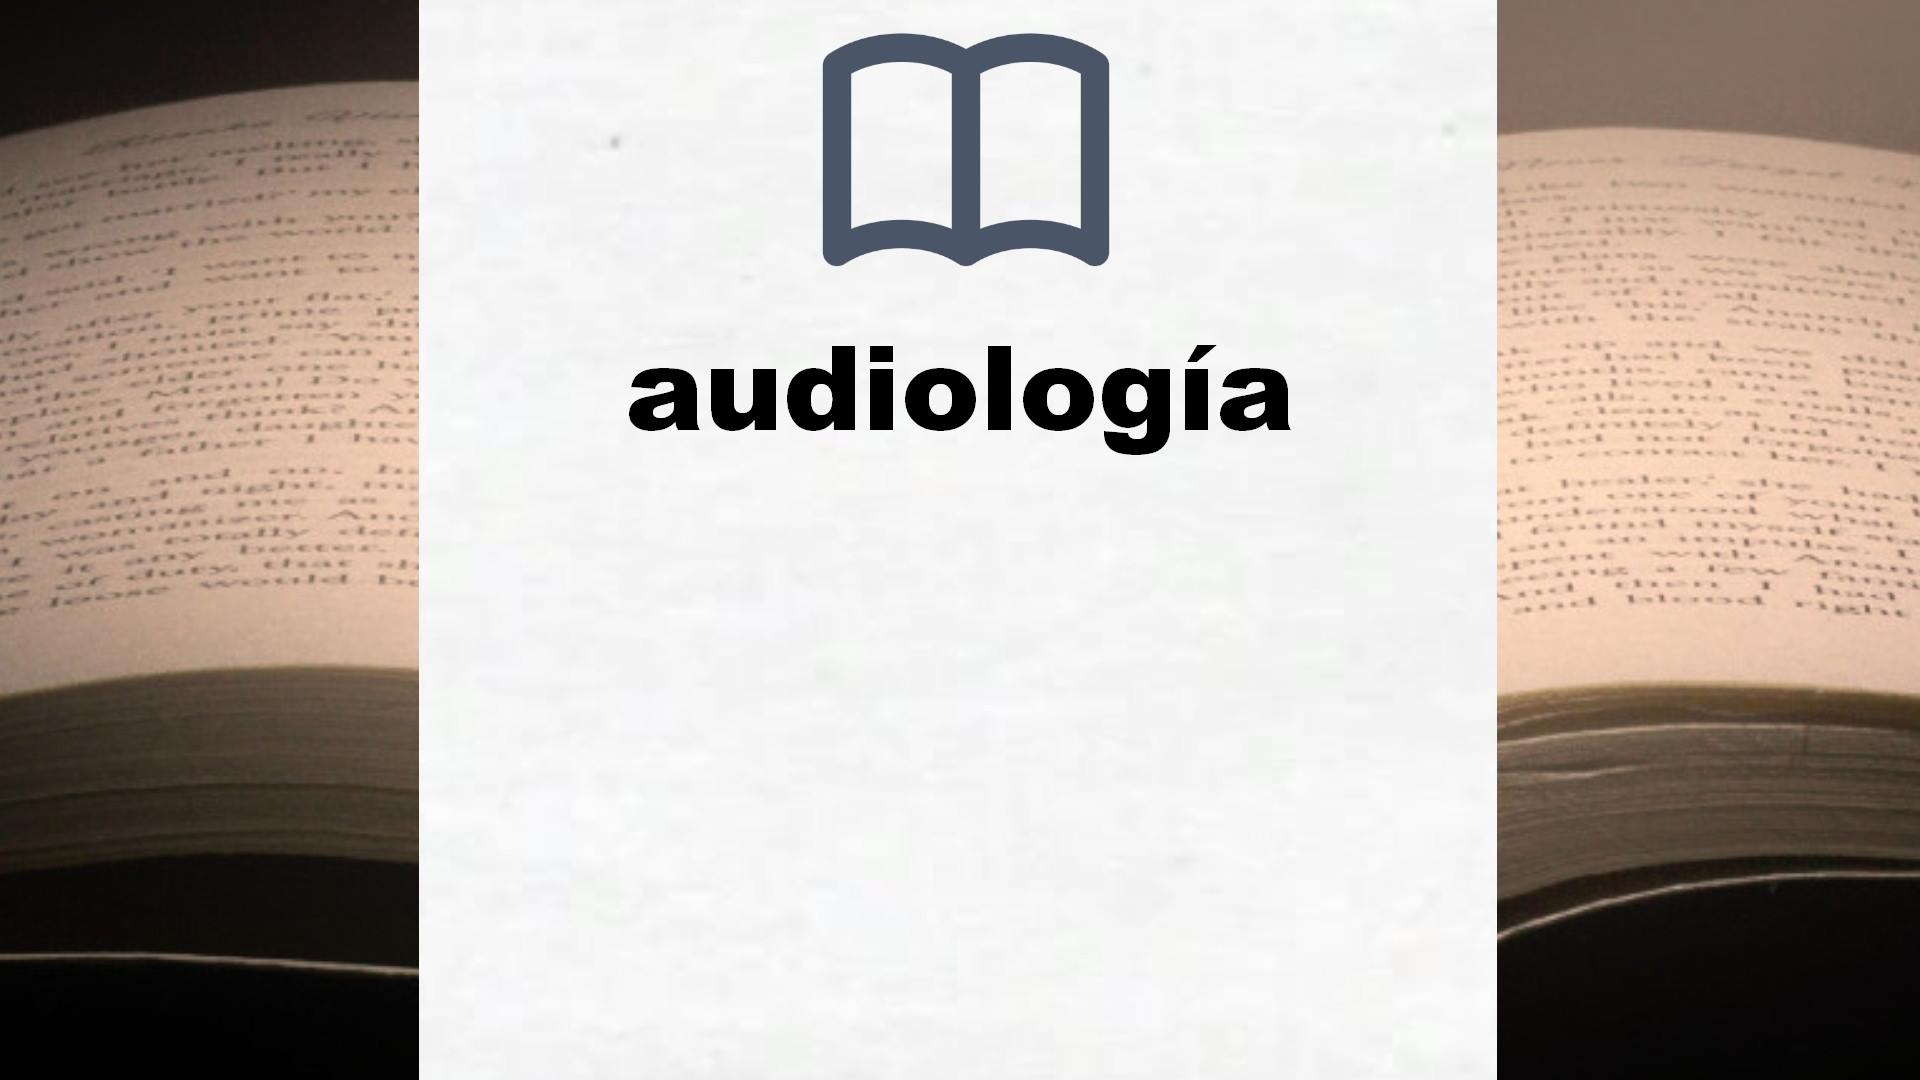 Libros sobre audiología